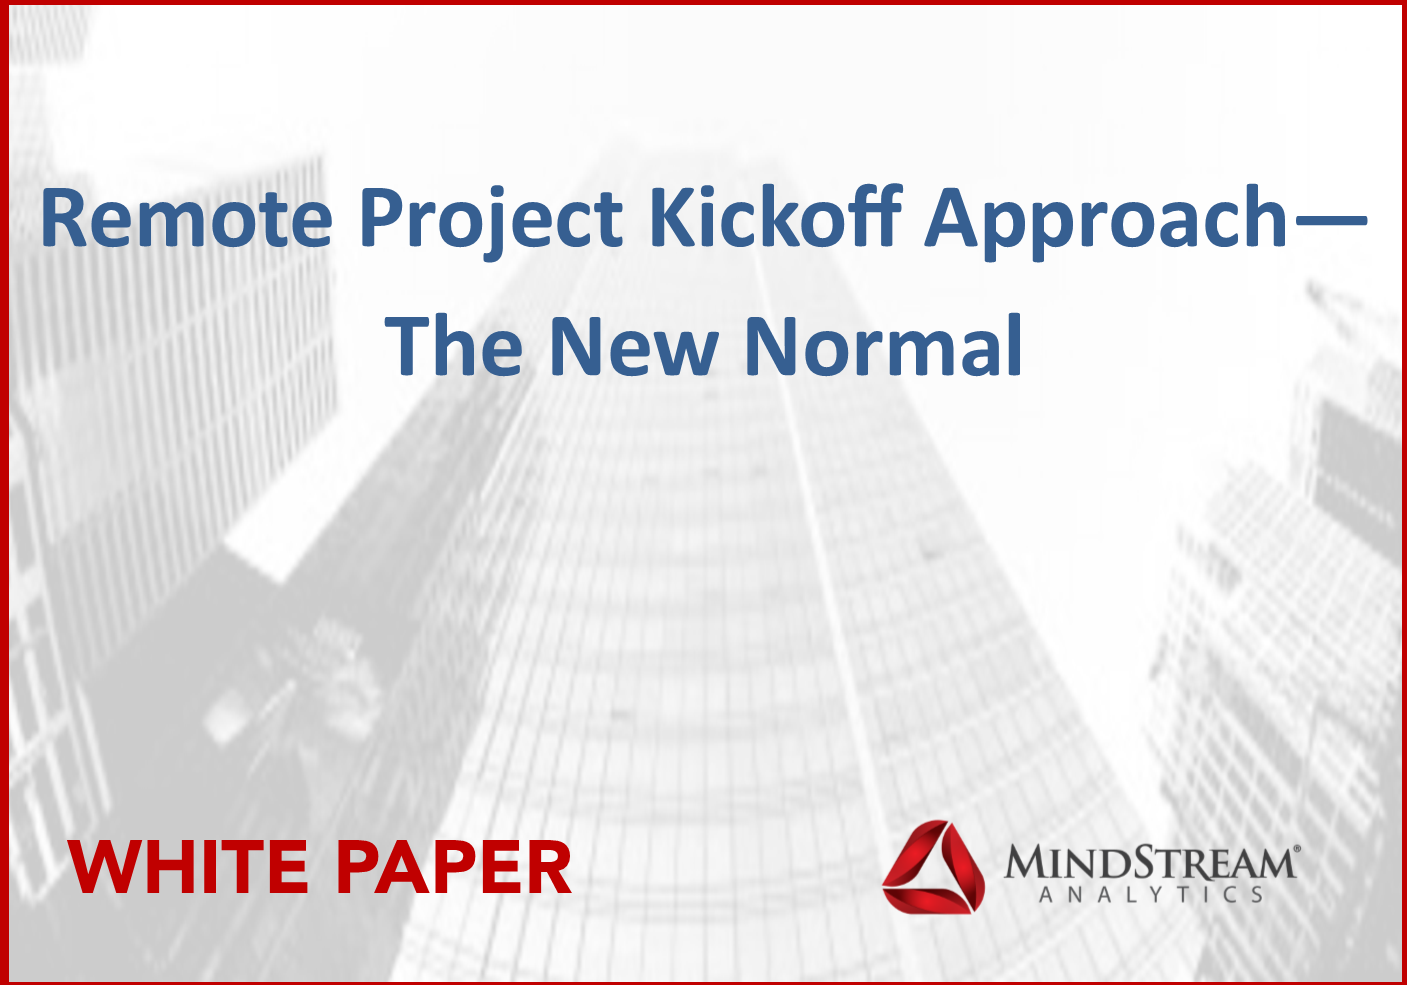 Remote Project White Paper